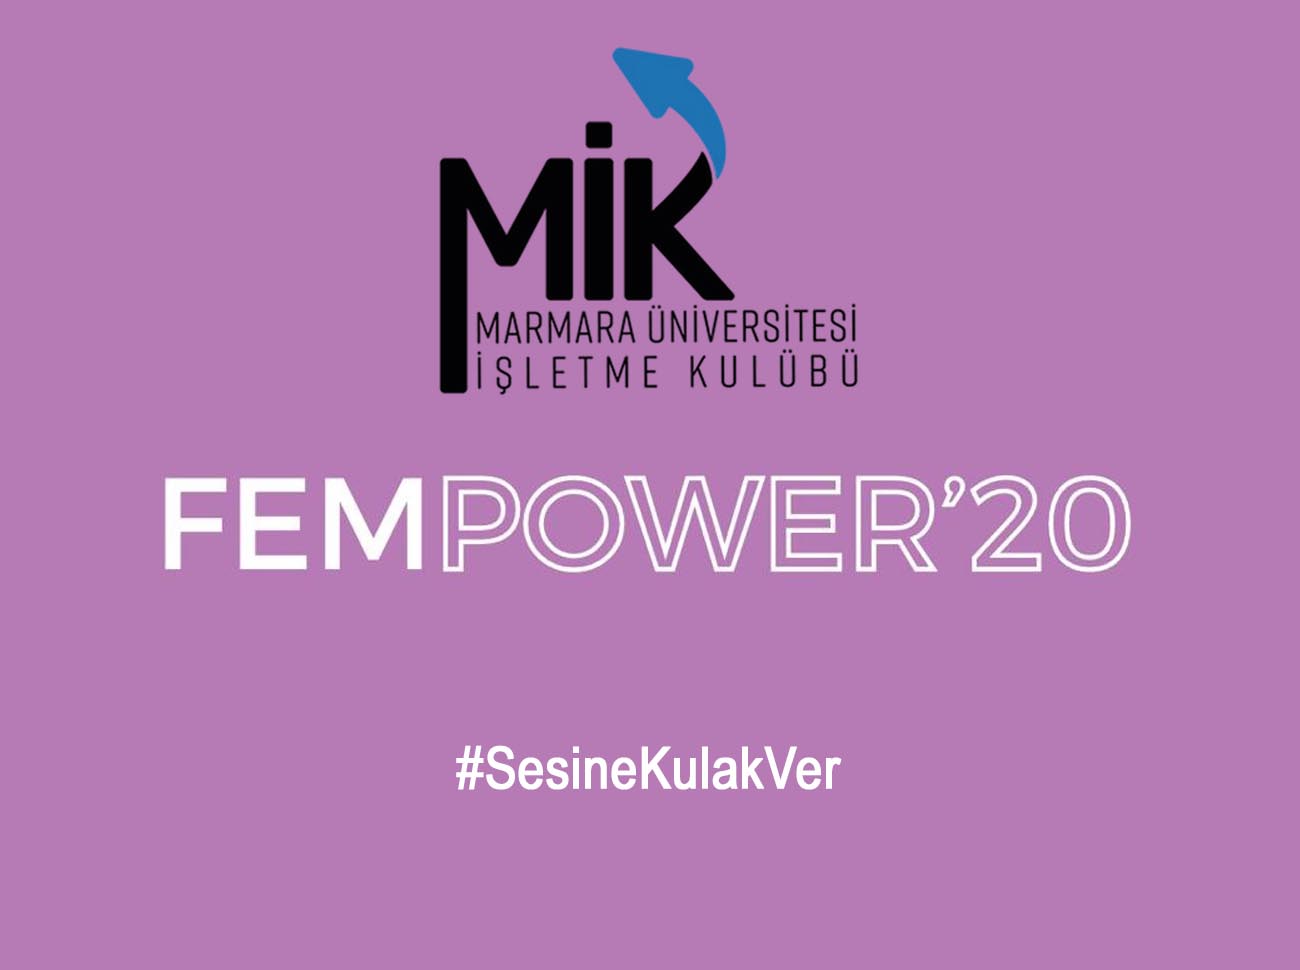 FemPower Summit 2020